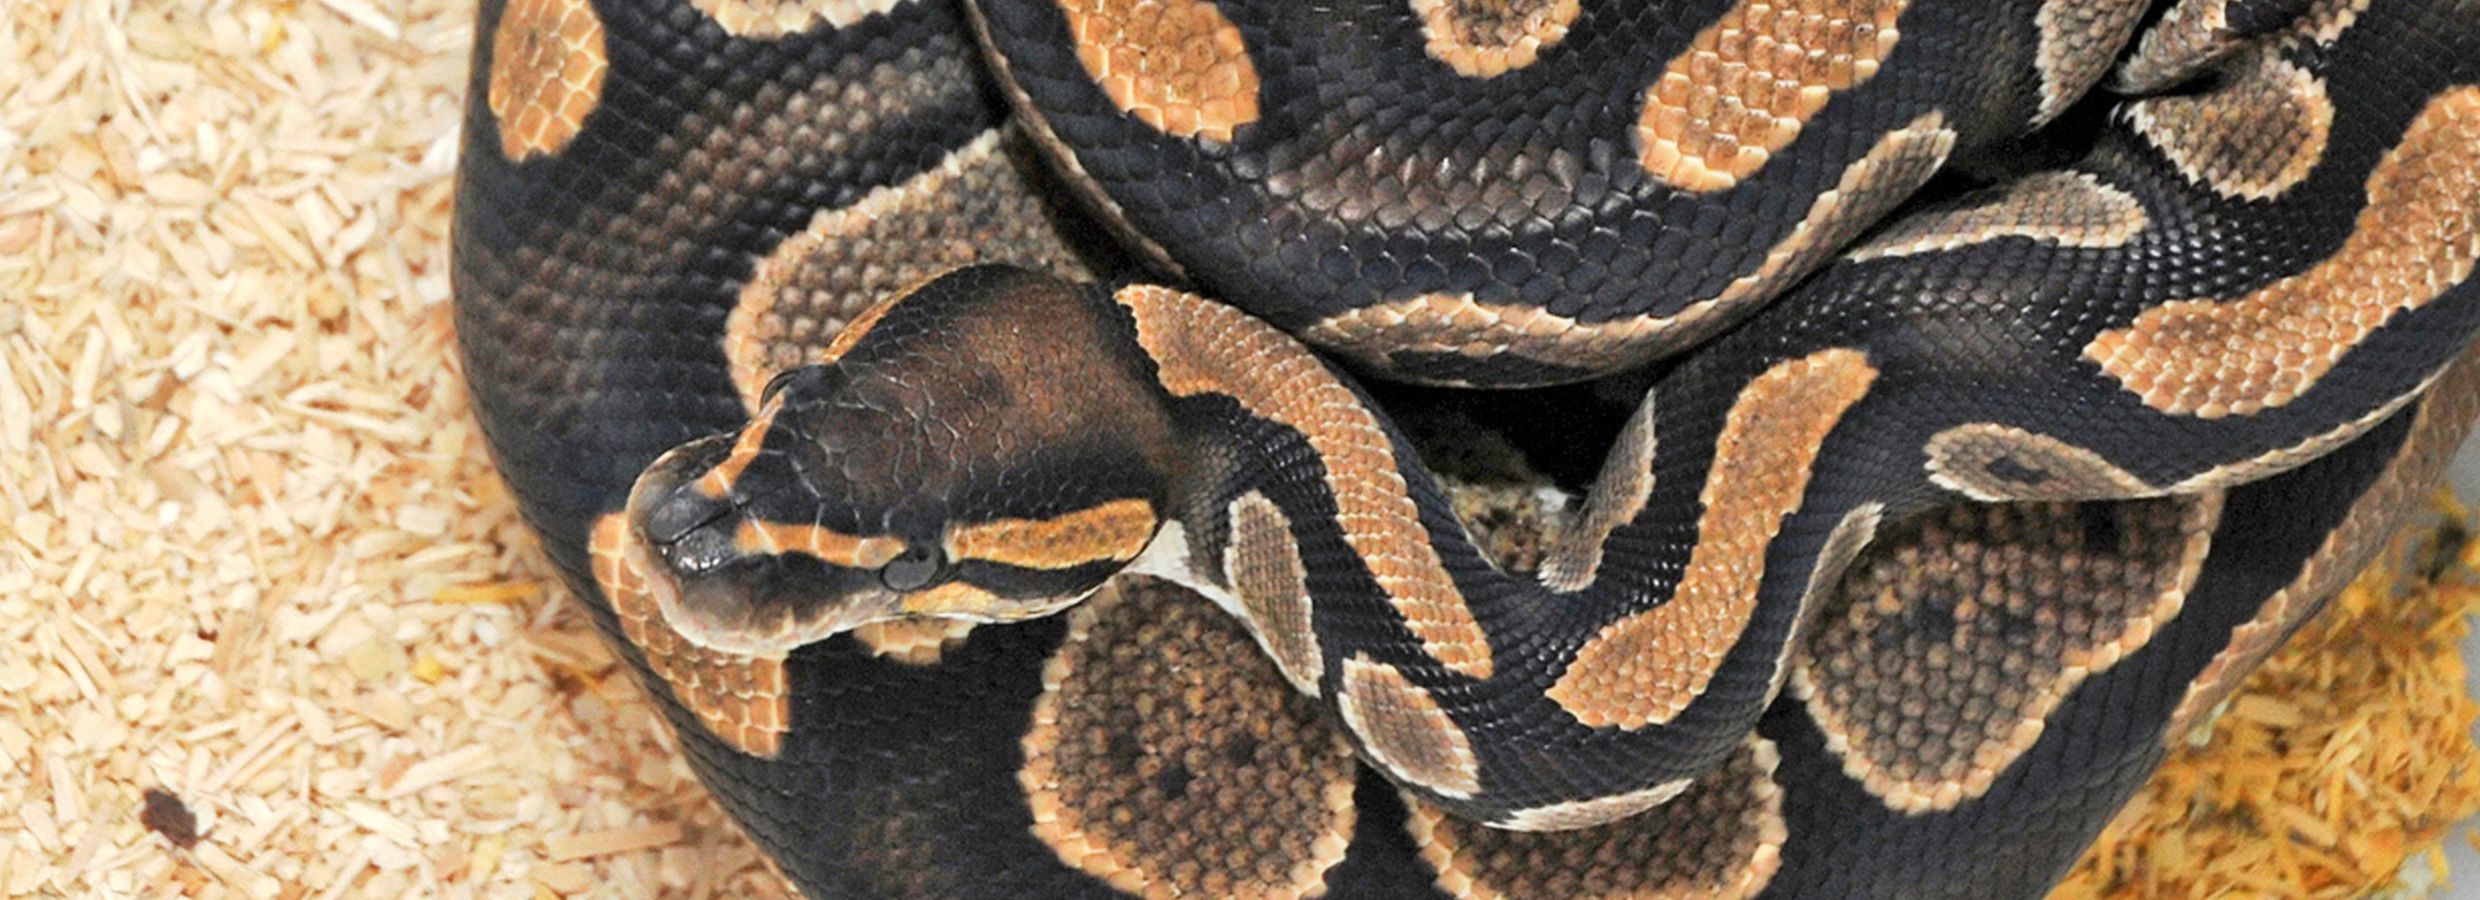 Snake Owning 101: Heat, Humidity, and Habitat